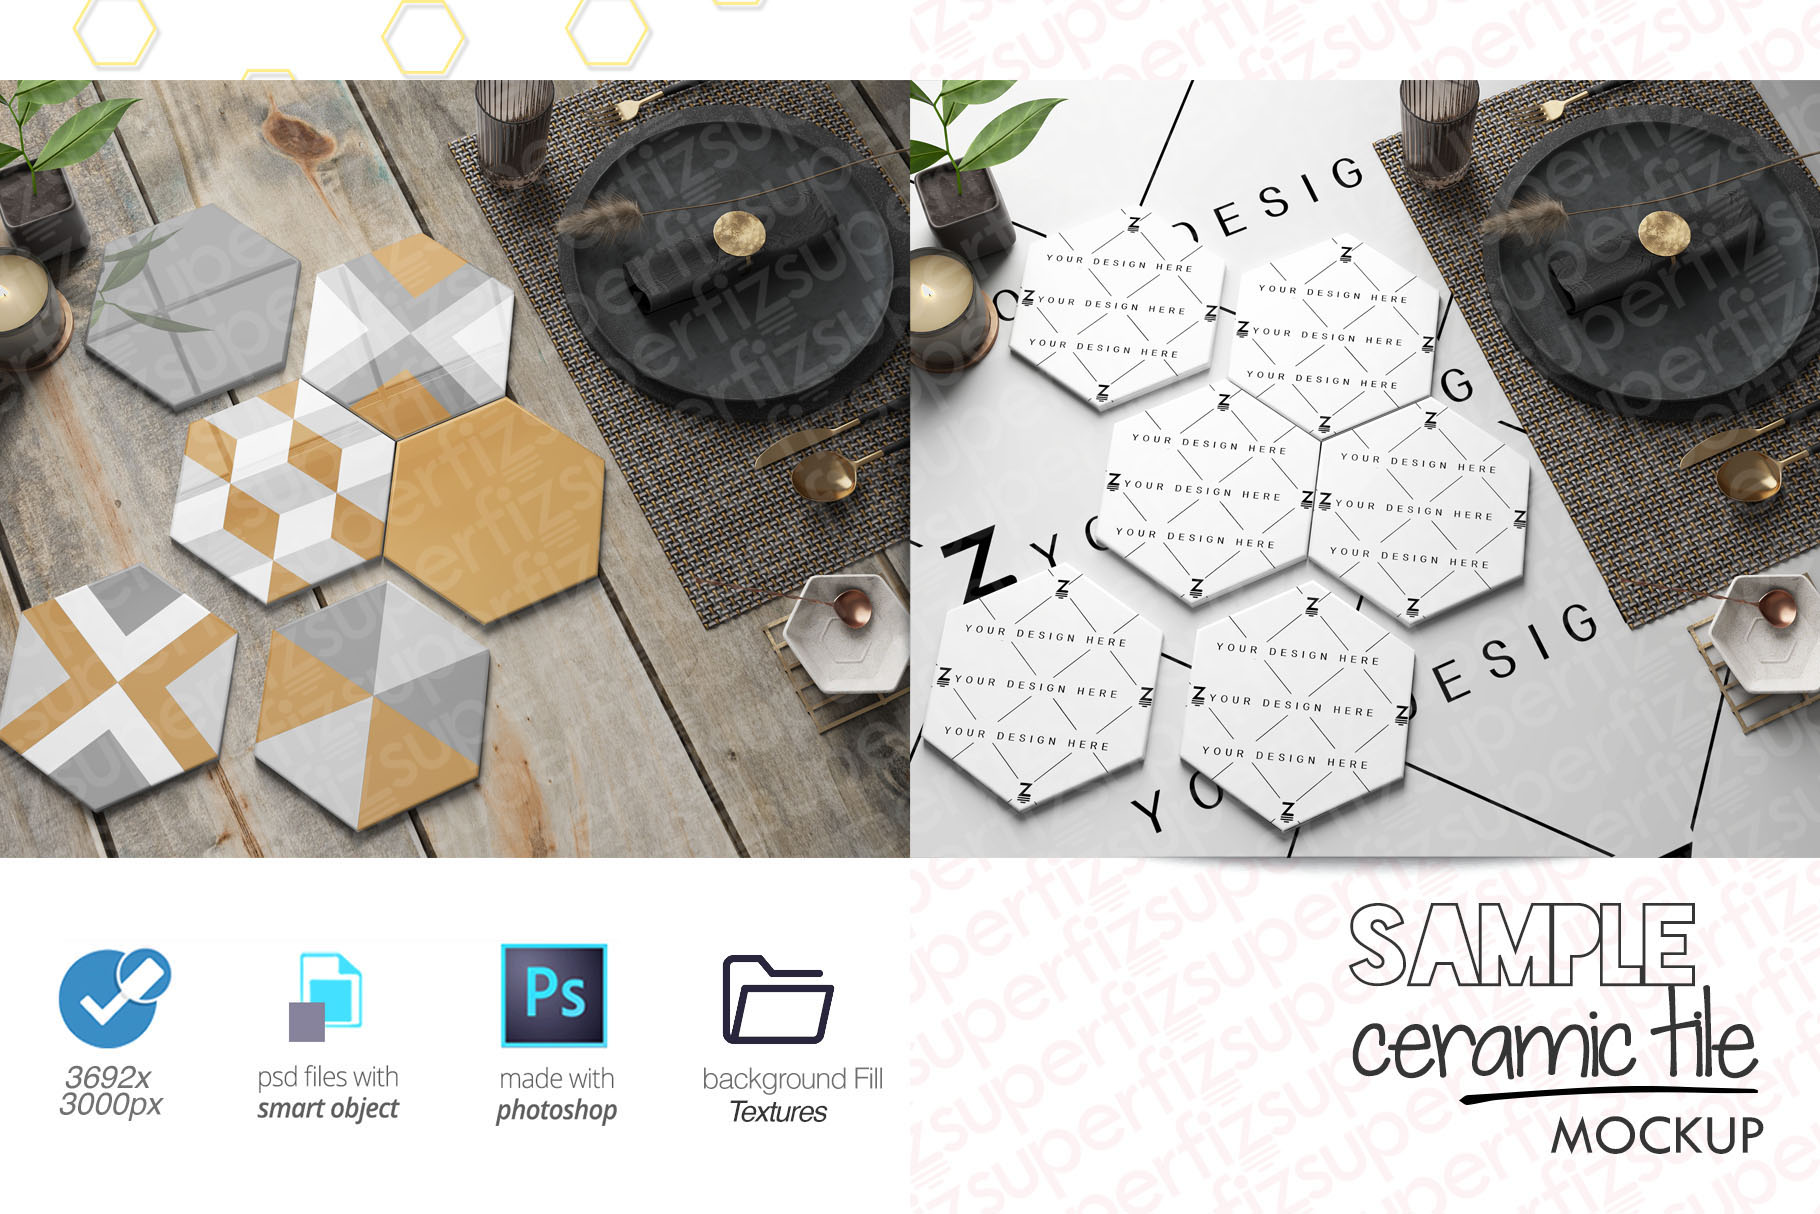 Download Sample Hexagonal Ceramic Tile Mockup PSD SM92H (306392) | Exhibition | Design Bundles